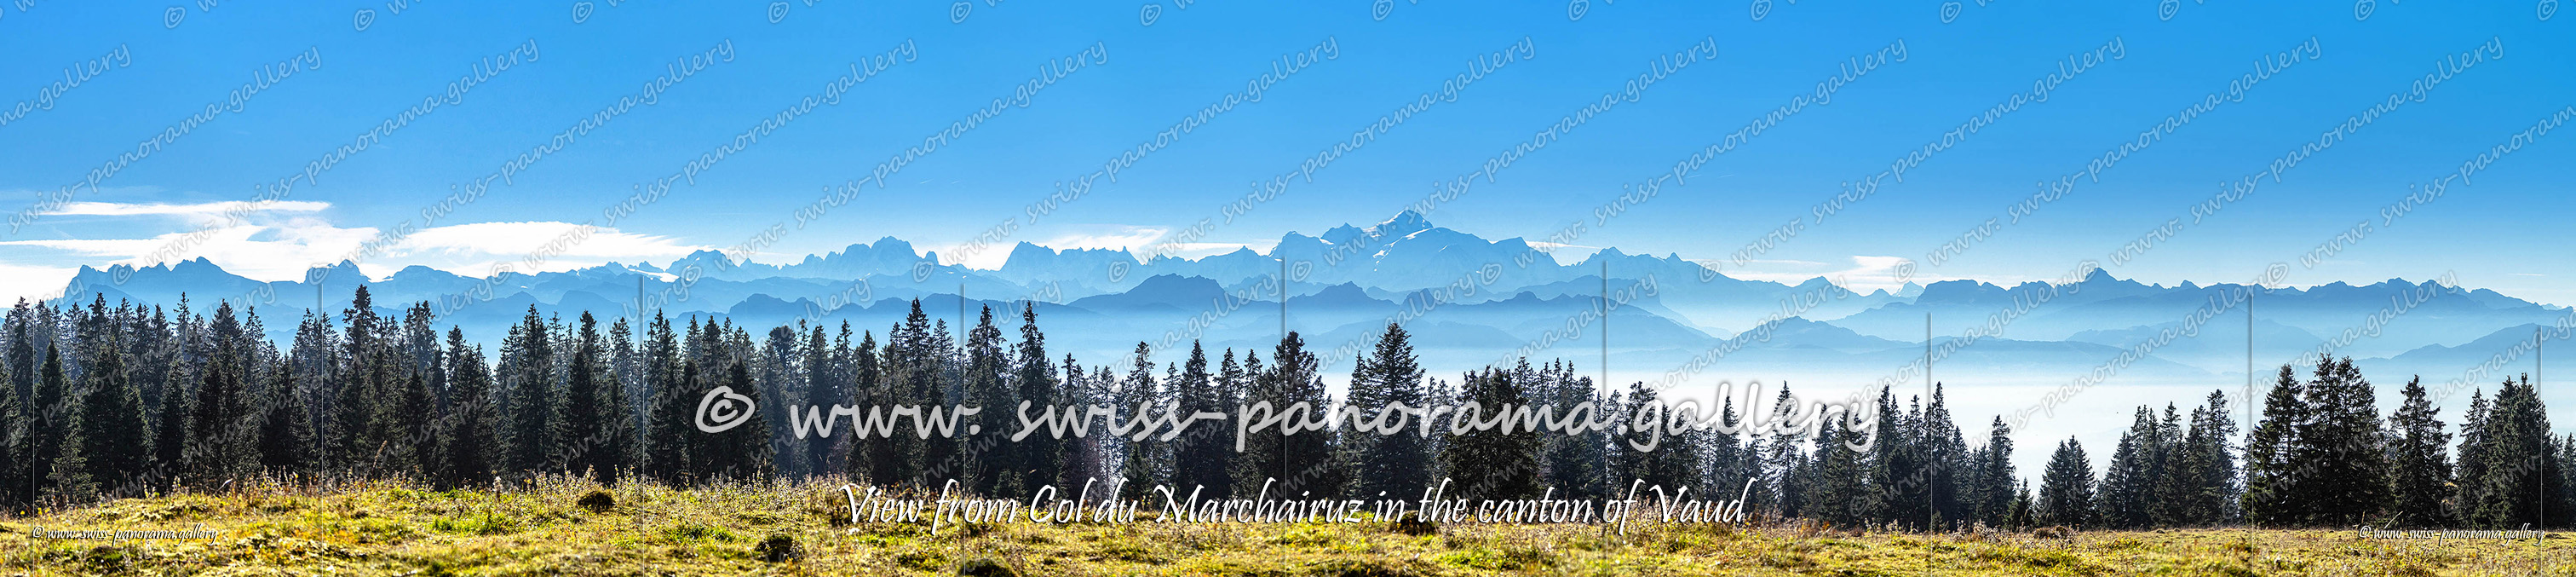 Switzerland panorama Col du Marchairuz panorama Mont Blanc massif